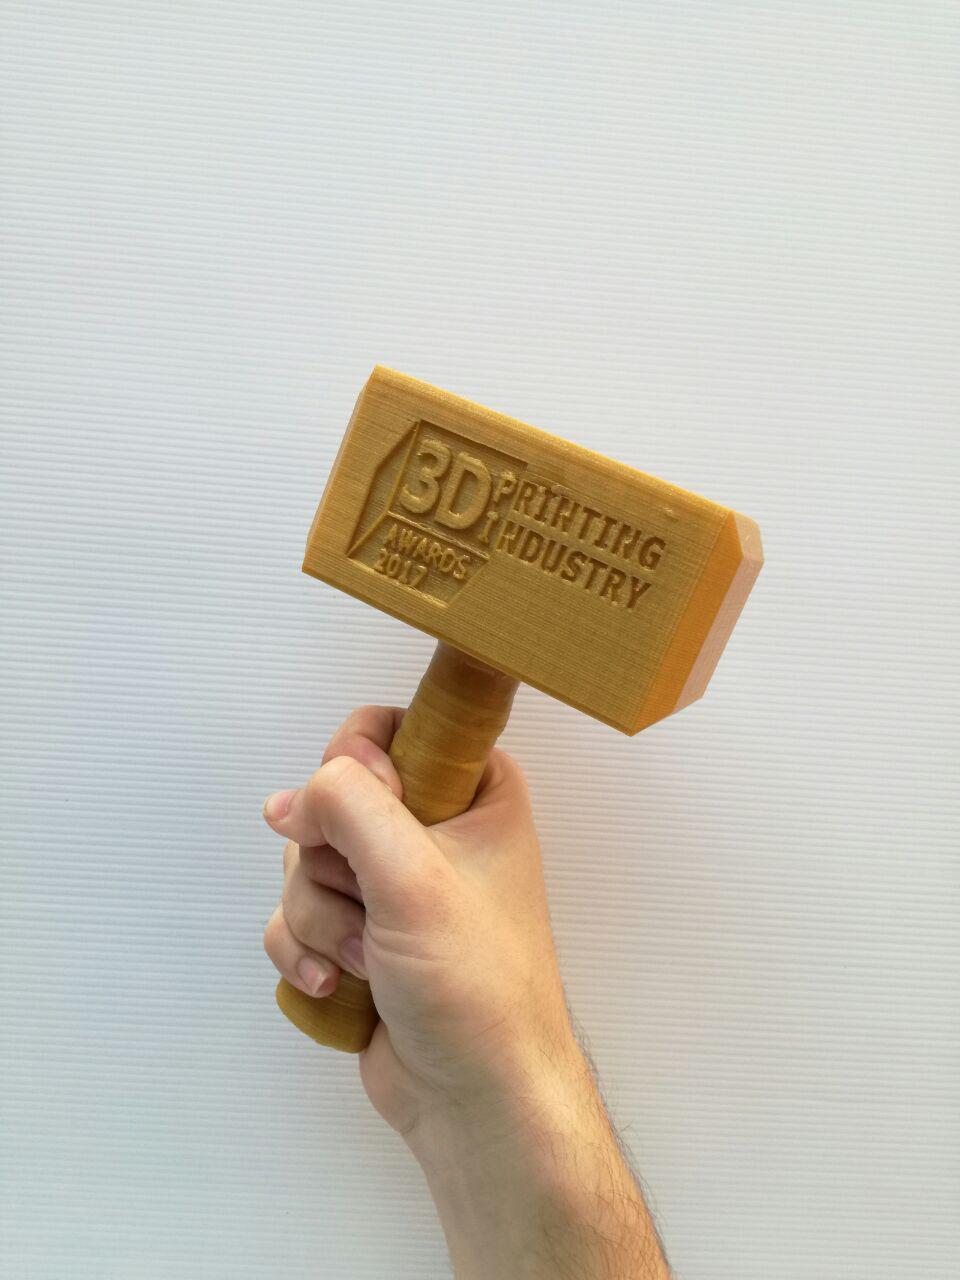 3D Printing Industry Award 2017 Hammer